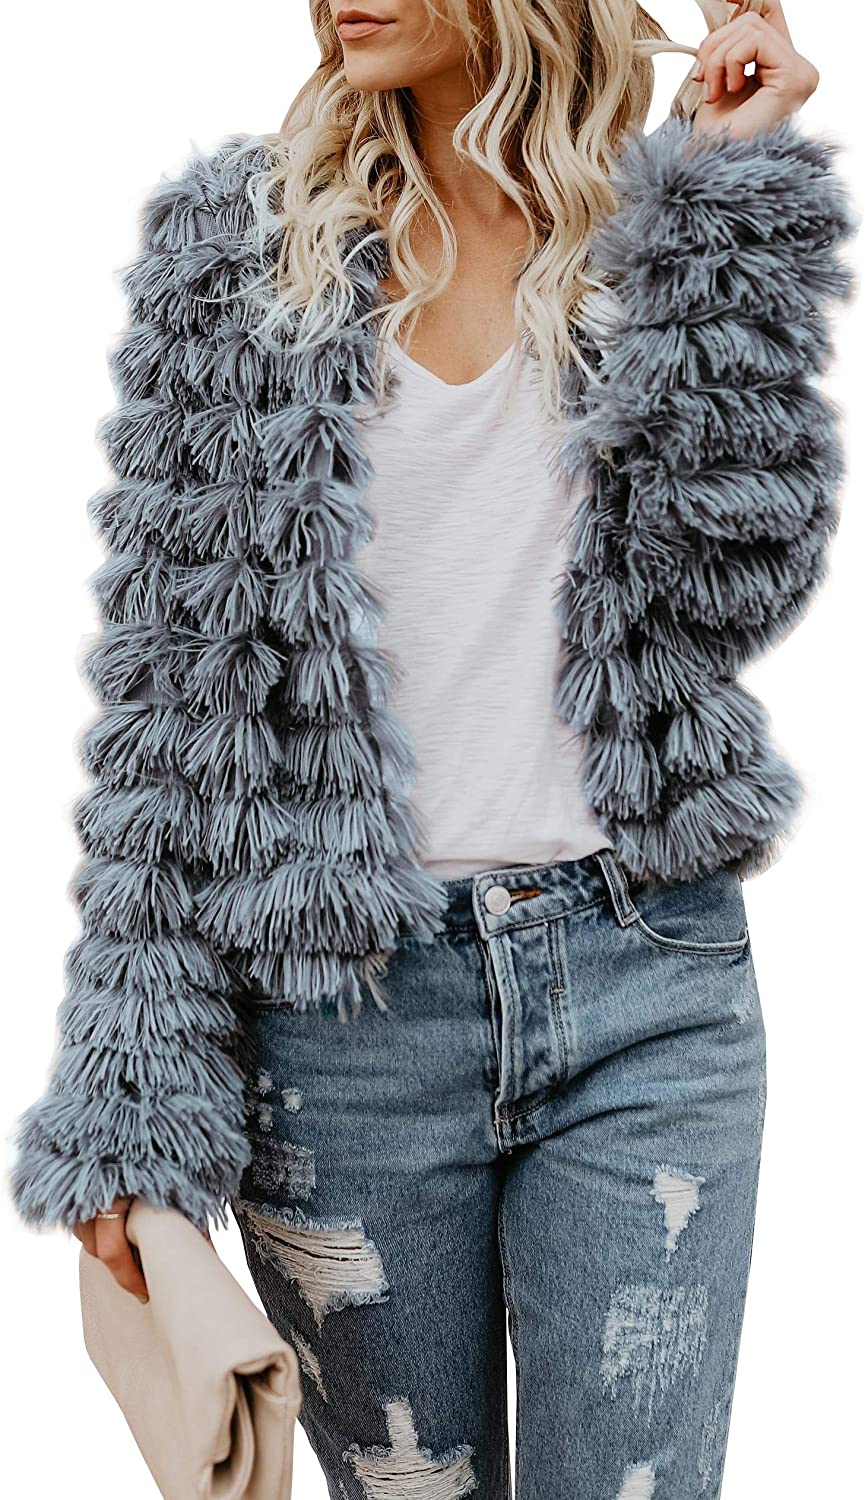 Ramoug Womens Winter Outwear Faux Fur Long Sleeve Short Jacket Parka Coat Open Front Cardigans